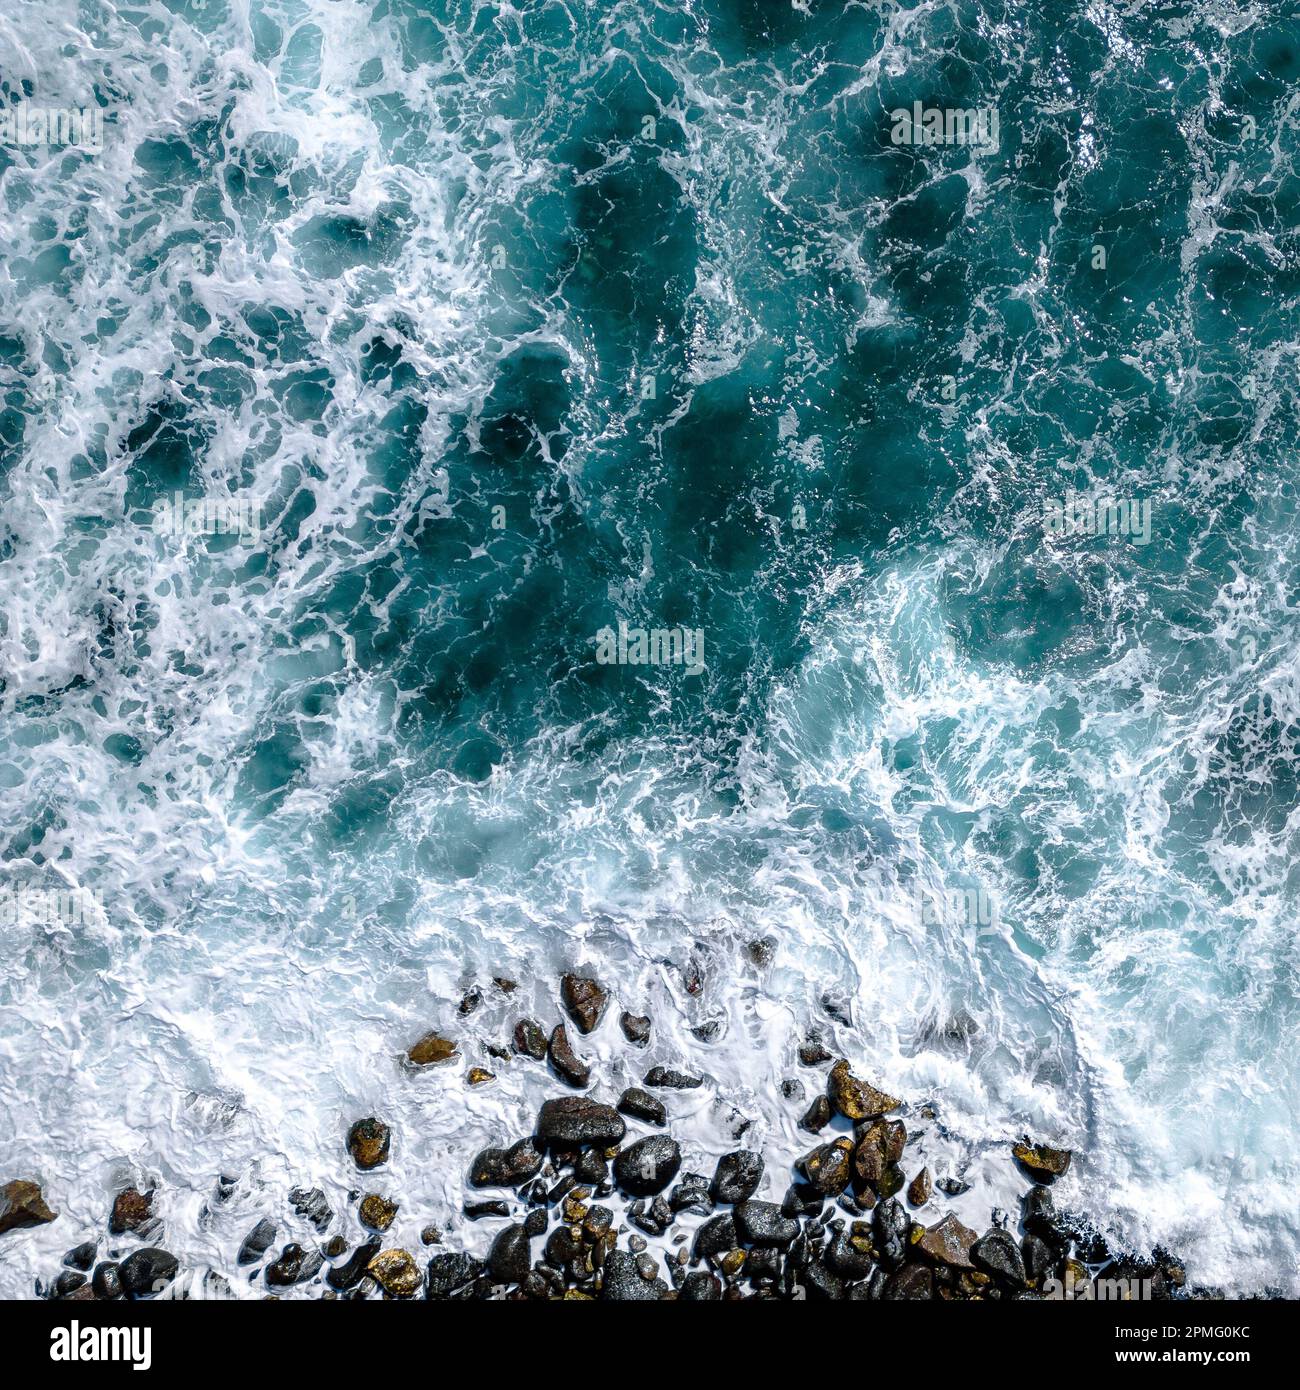 Luftaufnahme zu den Ozeanwellen. Blauer Hintergrund. Draufsicht auf das schäumende Wasser des Blauen Ozeans. Stockfoto